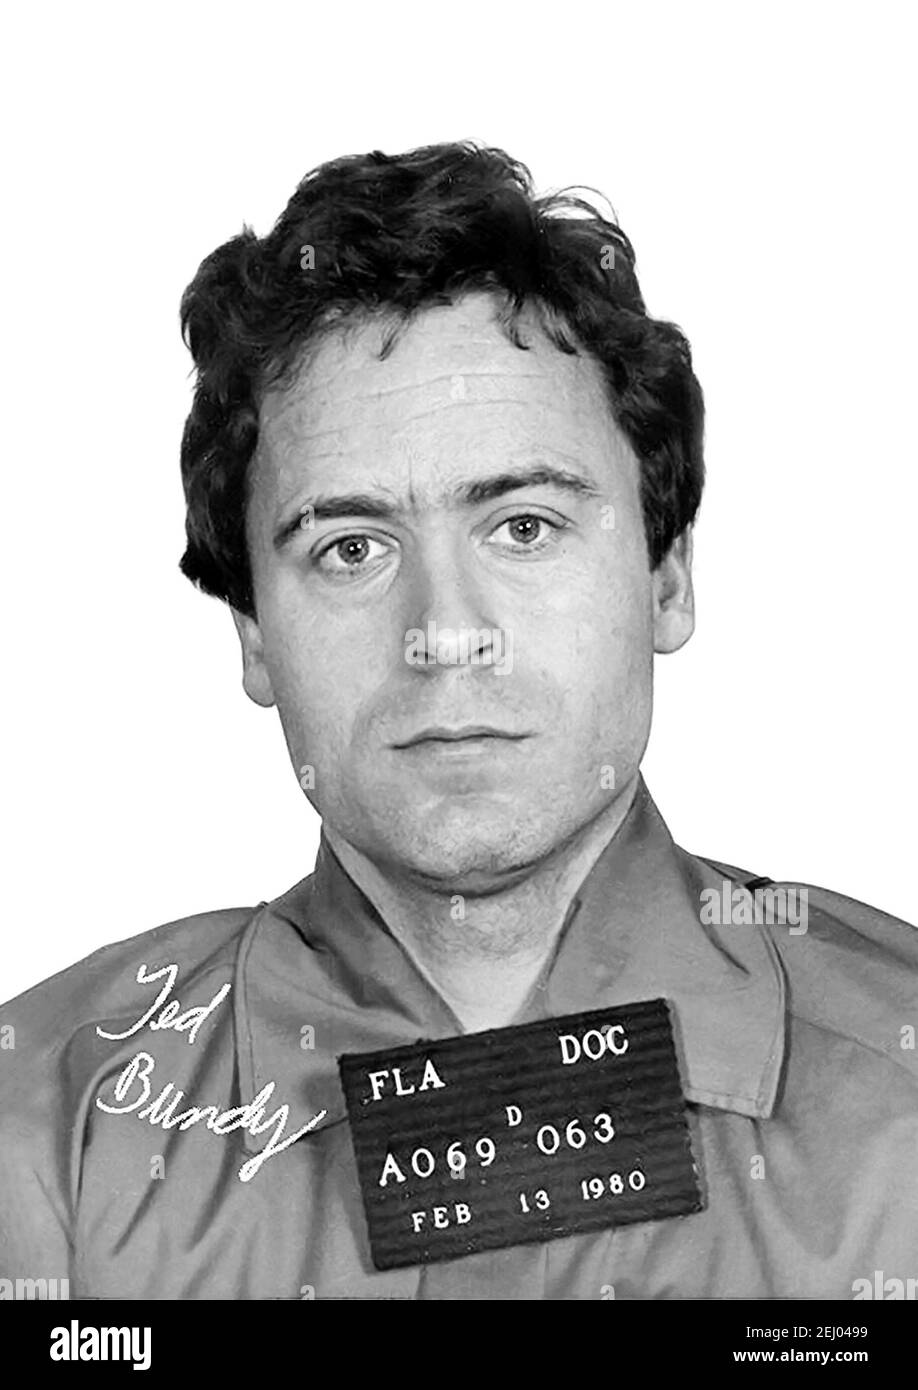 Ted Bundy. Portrait du tueur en série américain, Theodore Robert Bundy (n. Cowell, 1946-1989), Florida Department of corrections mug shot, février 1980 Banque D'Images